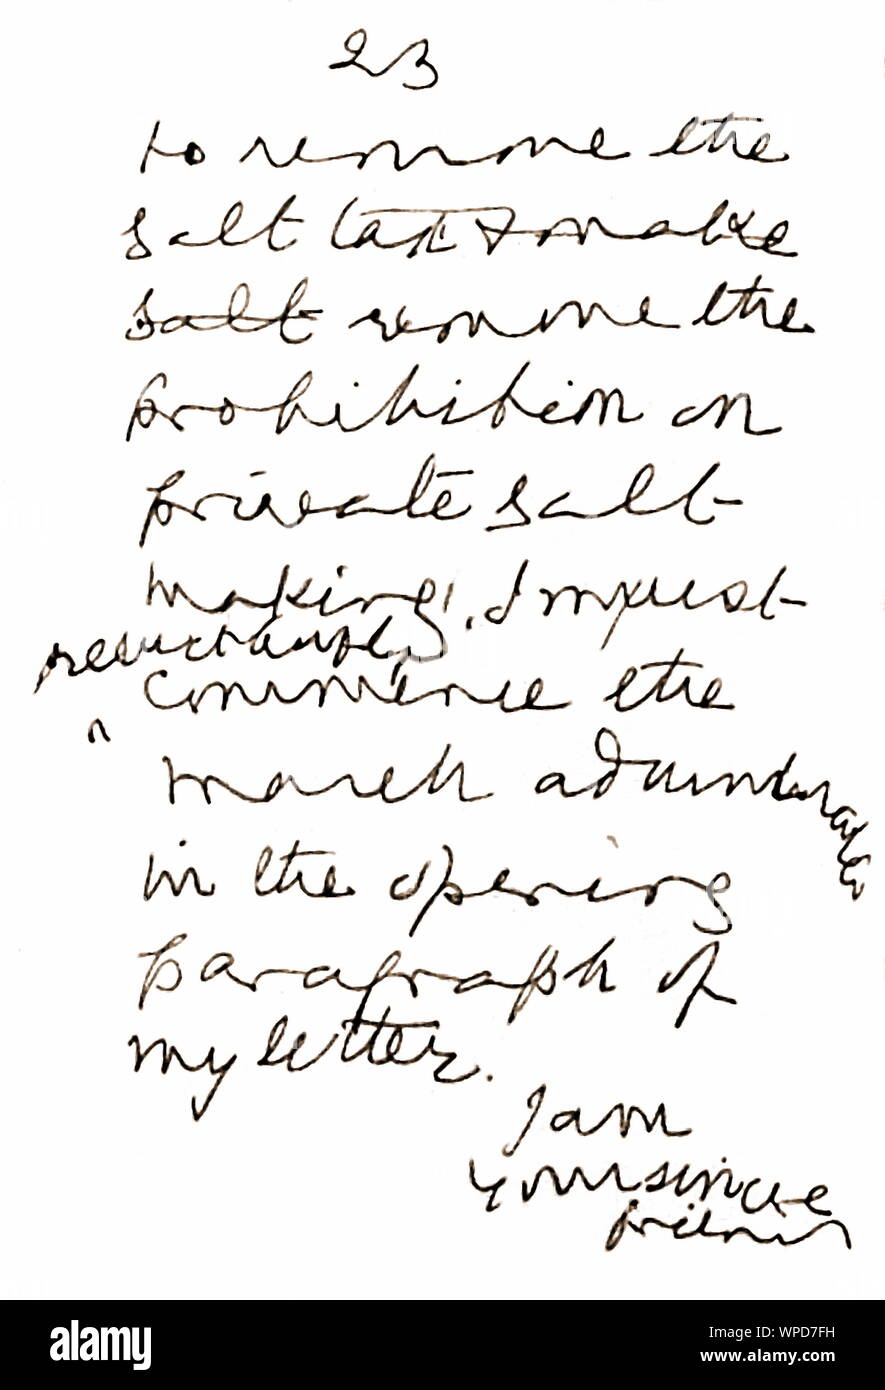 Handgeschriebenen Brief von Mahatma Gandhi zu britischen Vizekönig, Indien, Asien, 4. Mai 1930 Stockfoto